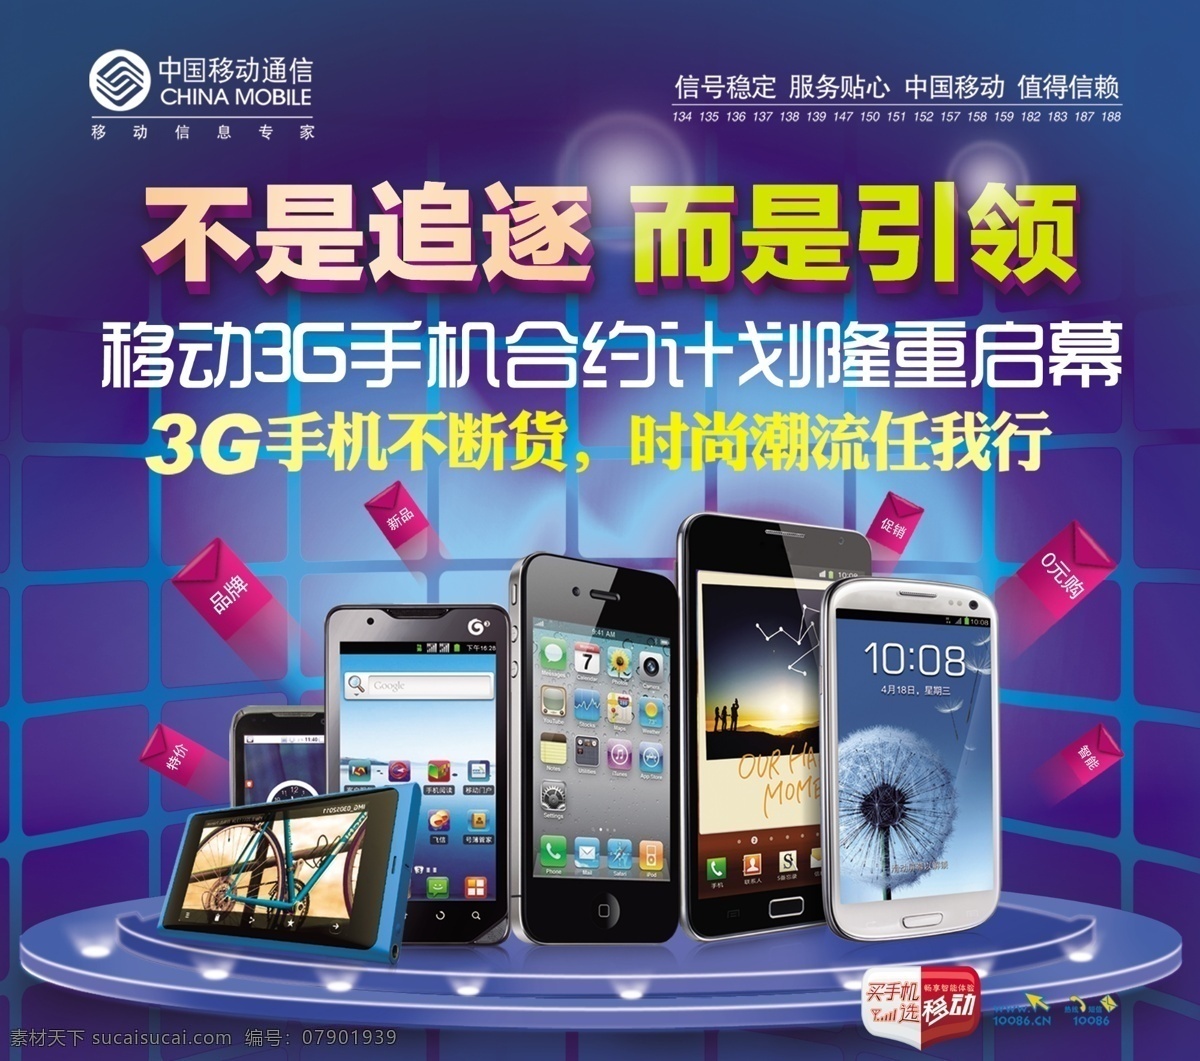 手机促销广告 手机 促销广告 中国 移动 促销 包装设计